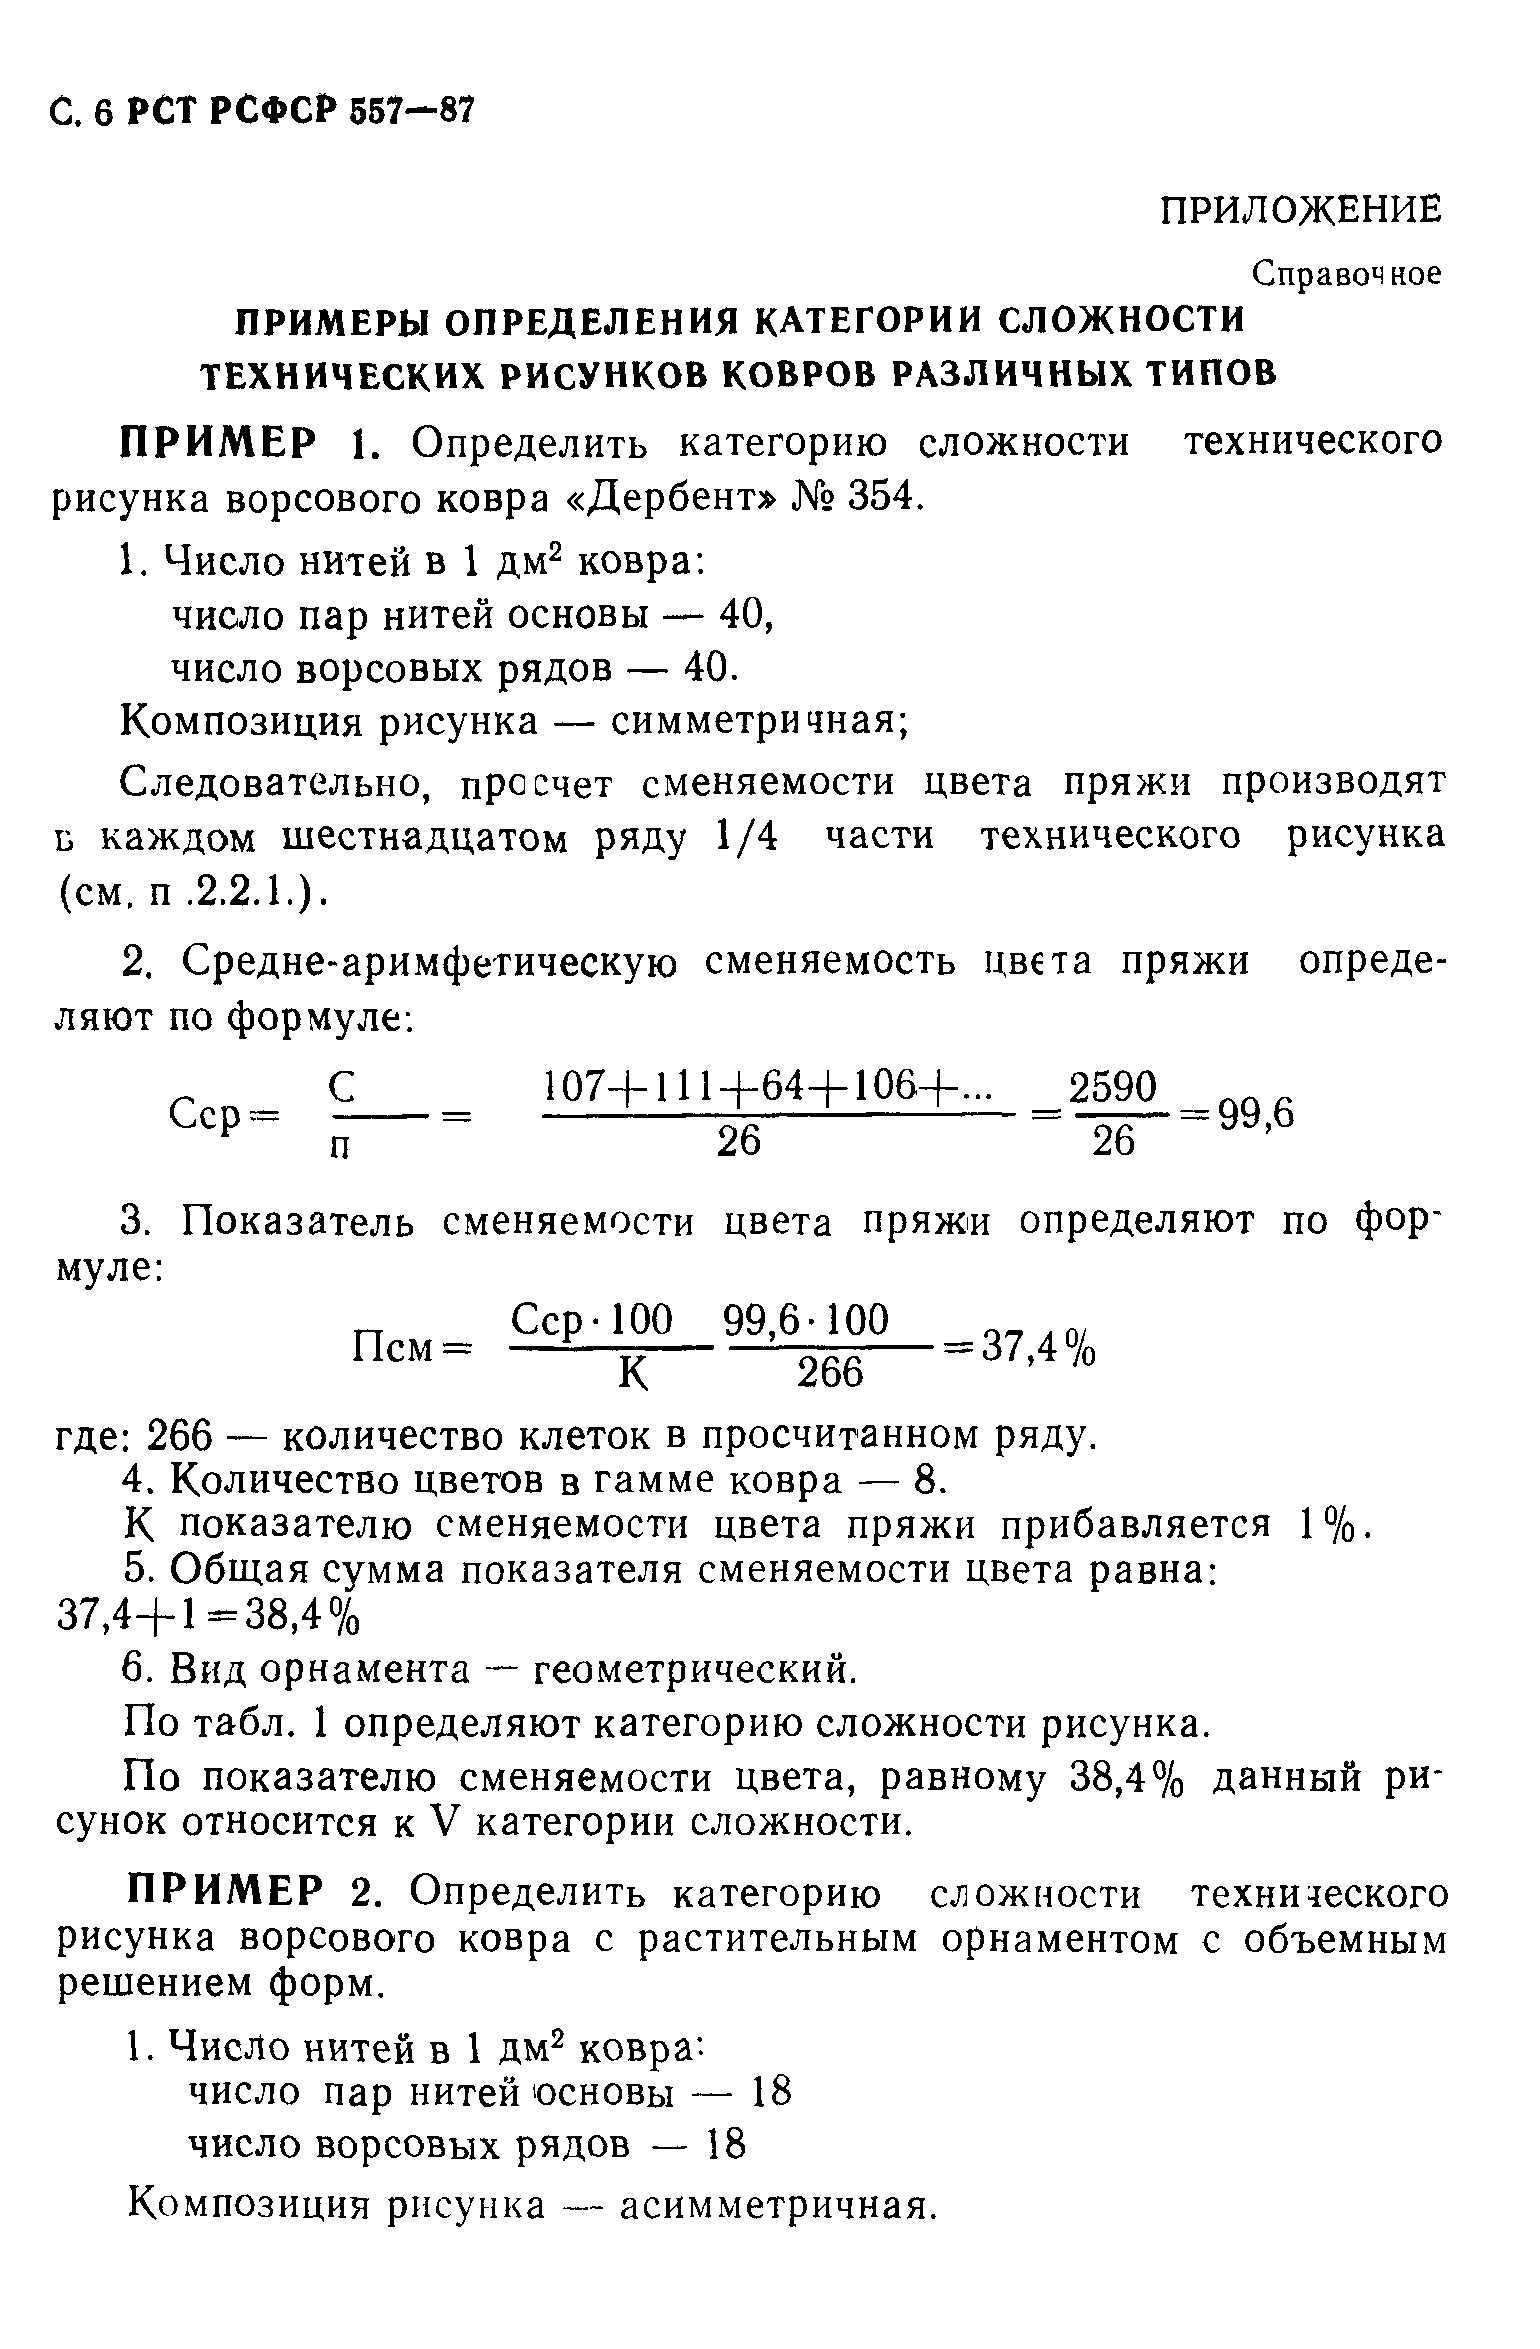 РСТ РСФСР 557-87